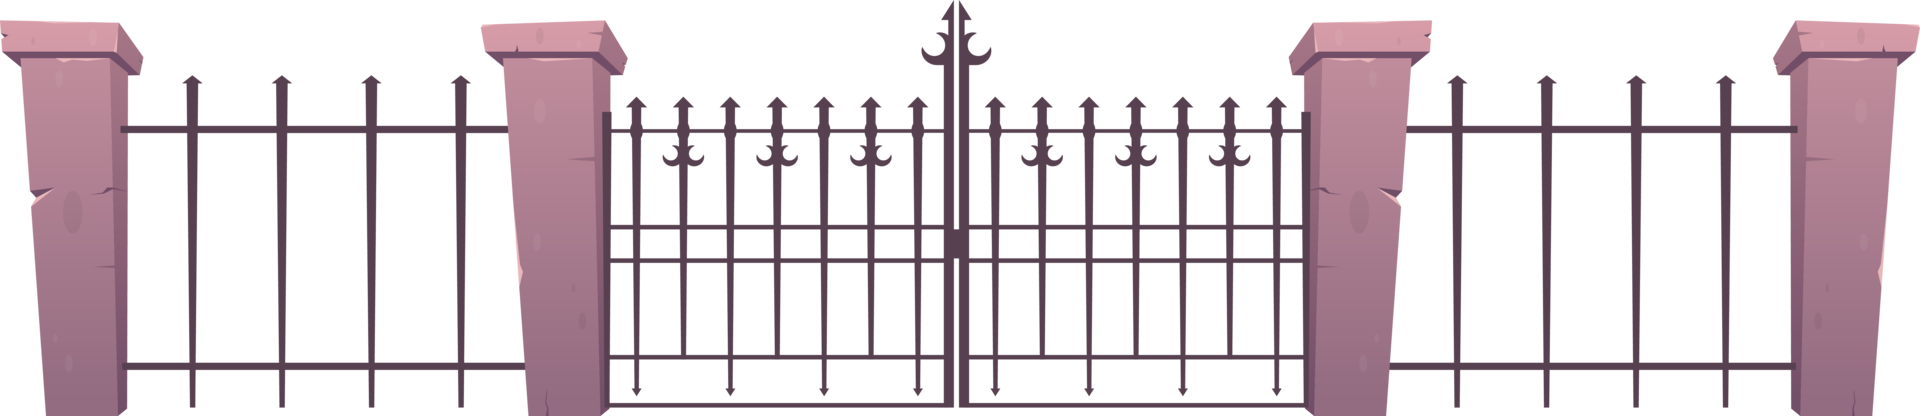 Eintrag Zaun gemacht von Stahl und Beton im Karikatur Stil png